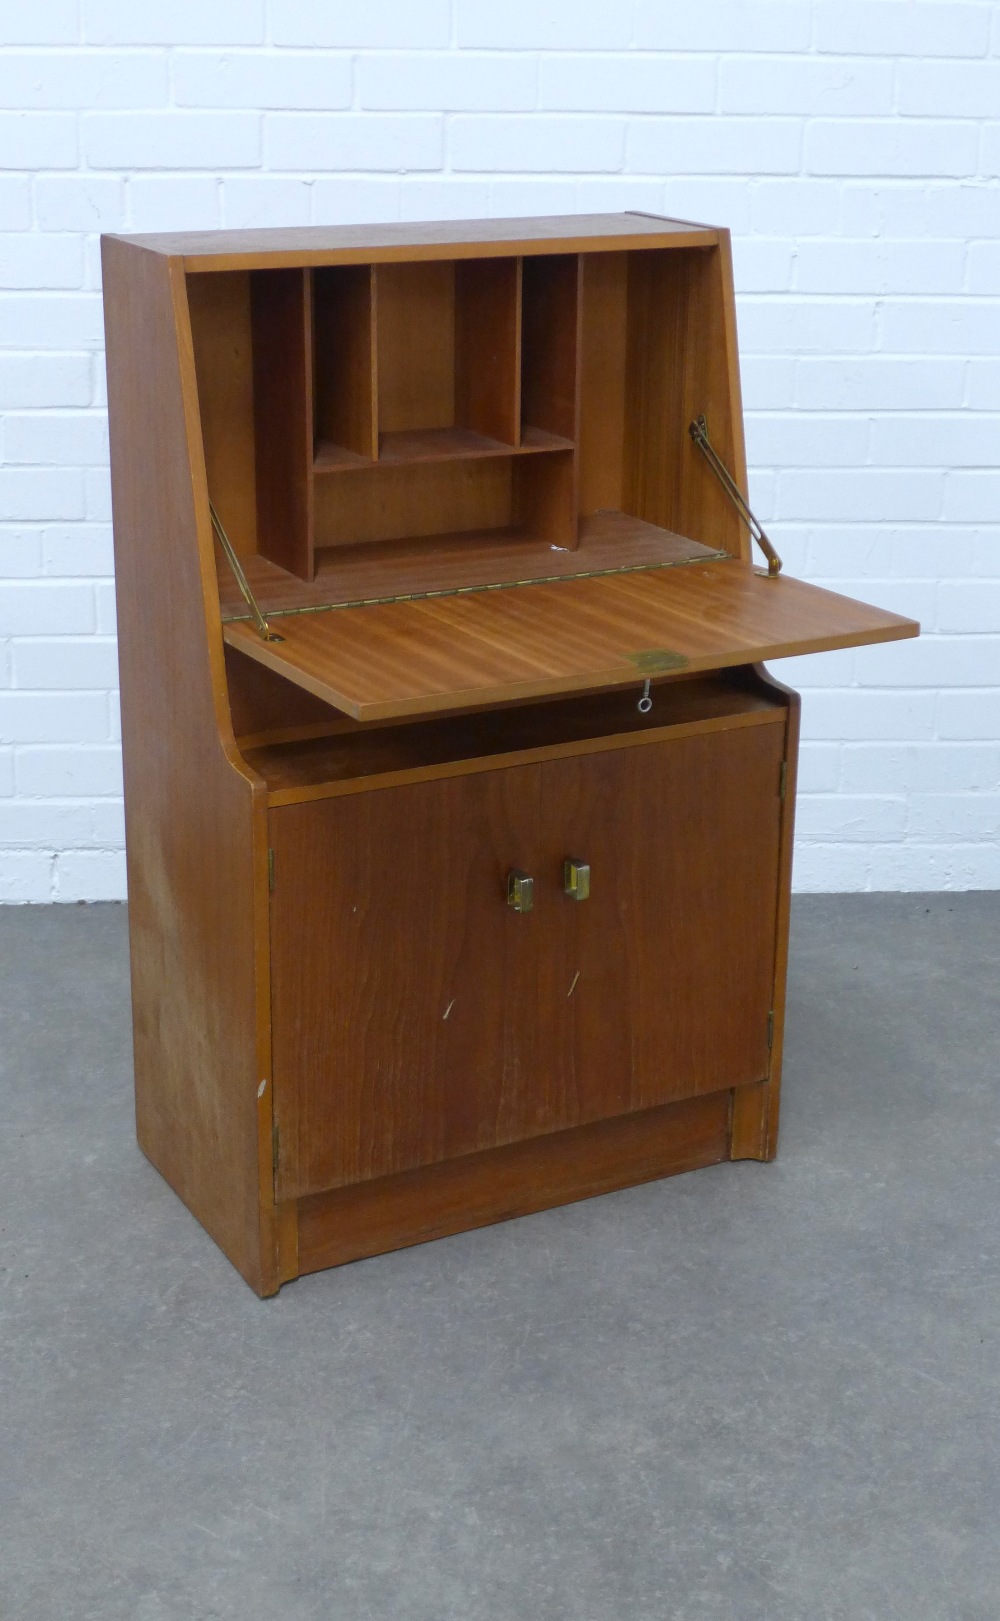 Retro teak bureau cabinet, 61 x 98 x 35cm. - Image 2 of 2